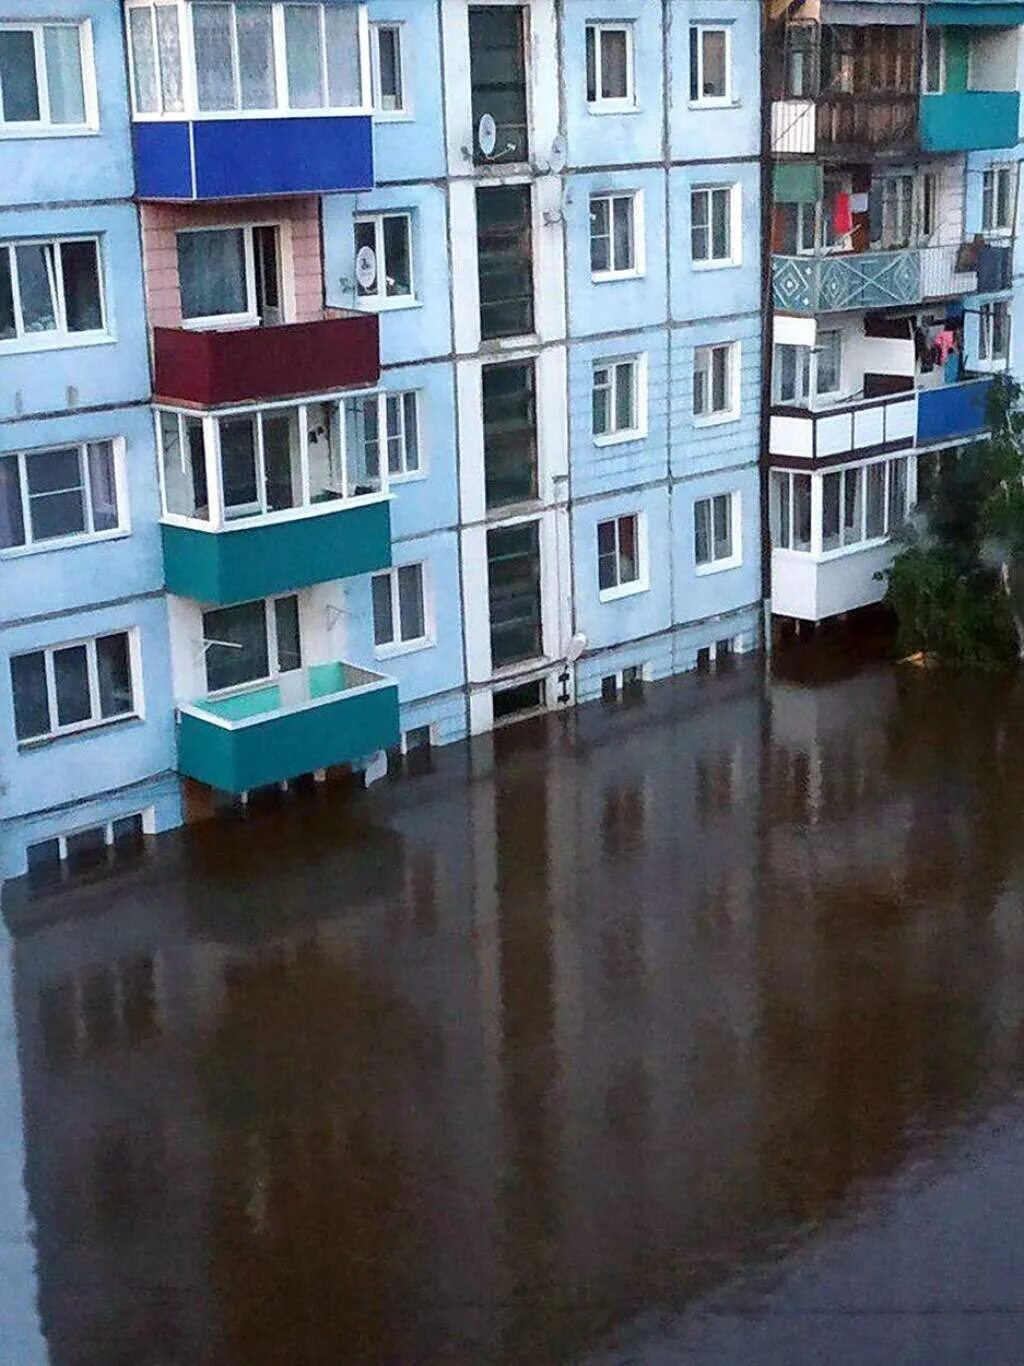 Иркутская область погода сейчас. Наводнение в Тулуне 2019. Тулун Иркутская область наводнение. Наводнение Тулун июнь 2019. Город Тулун наводнение 2019.